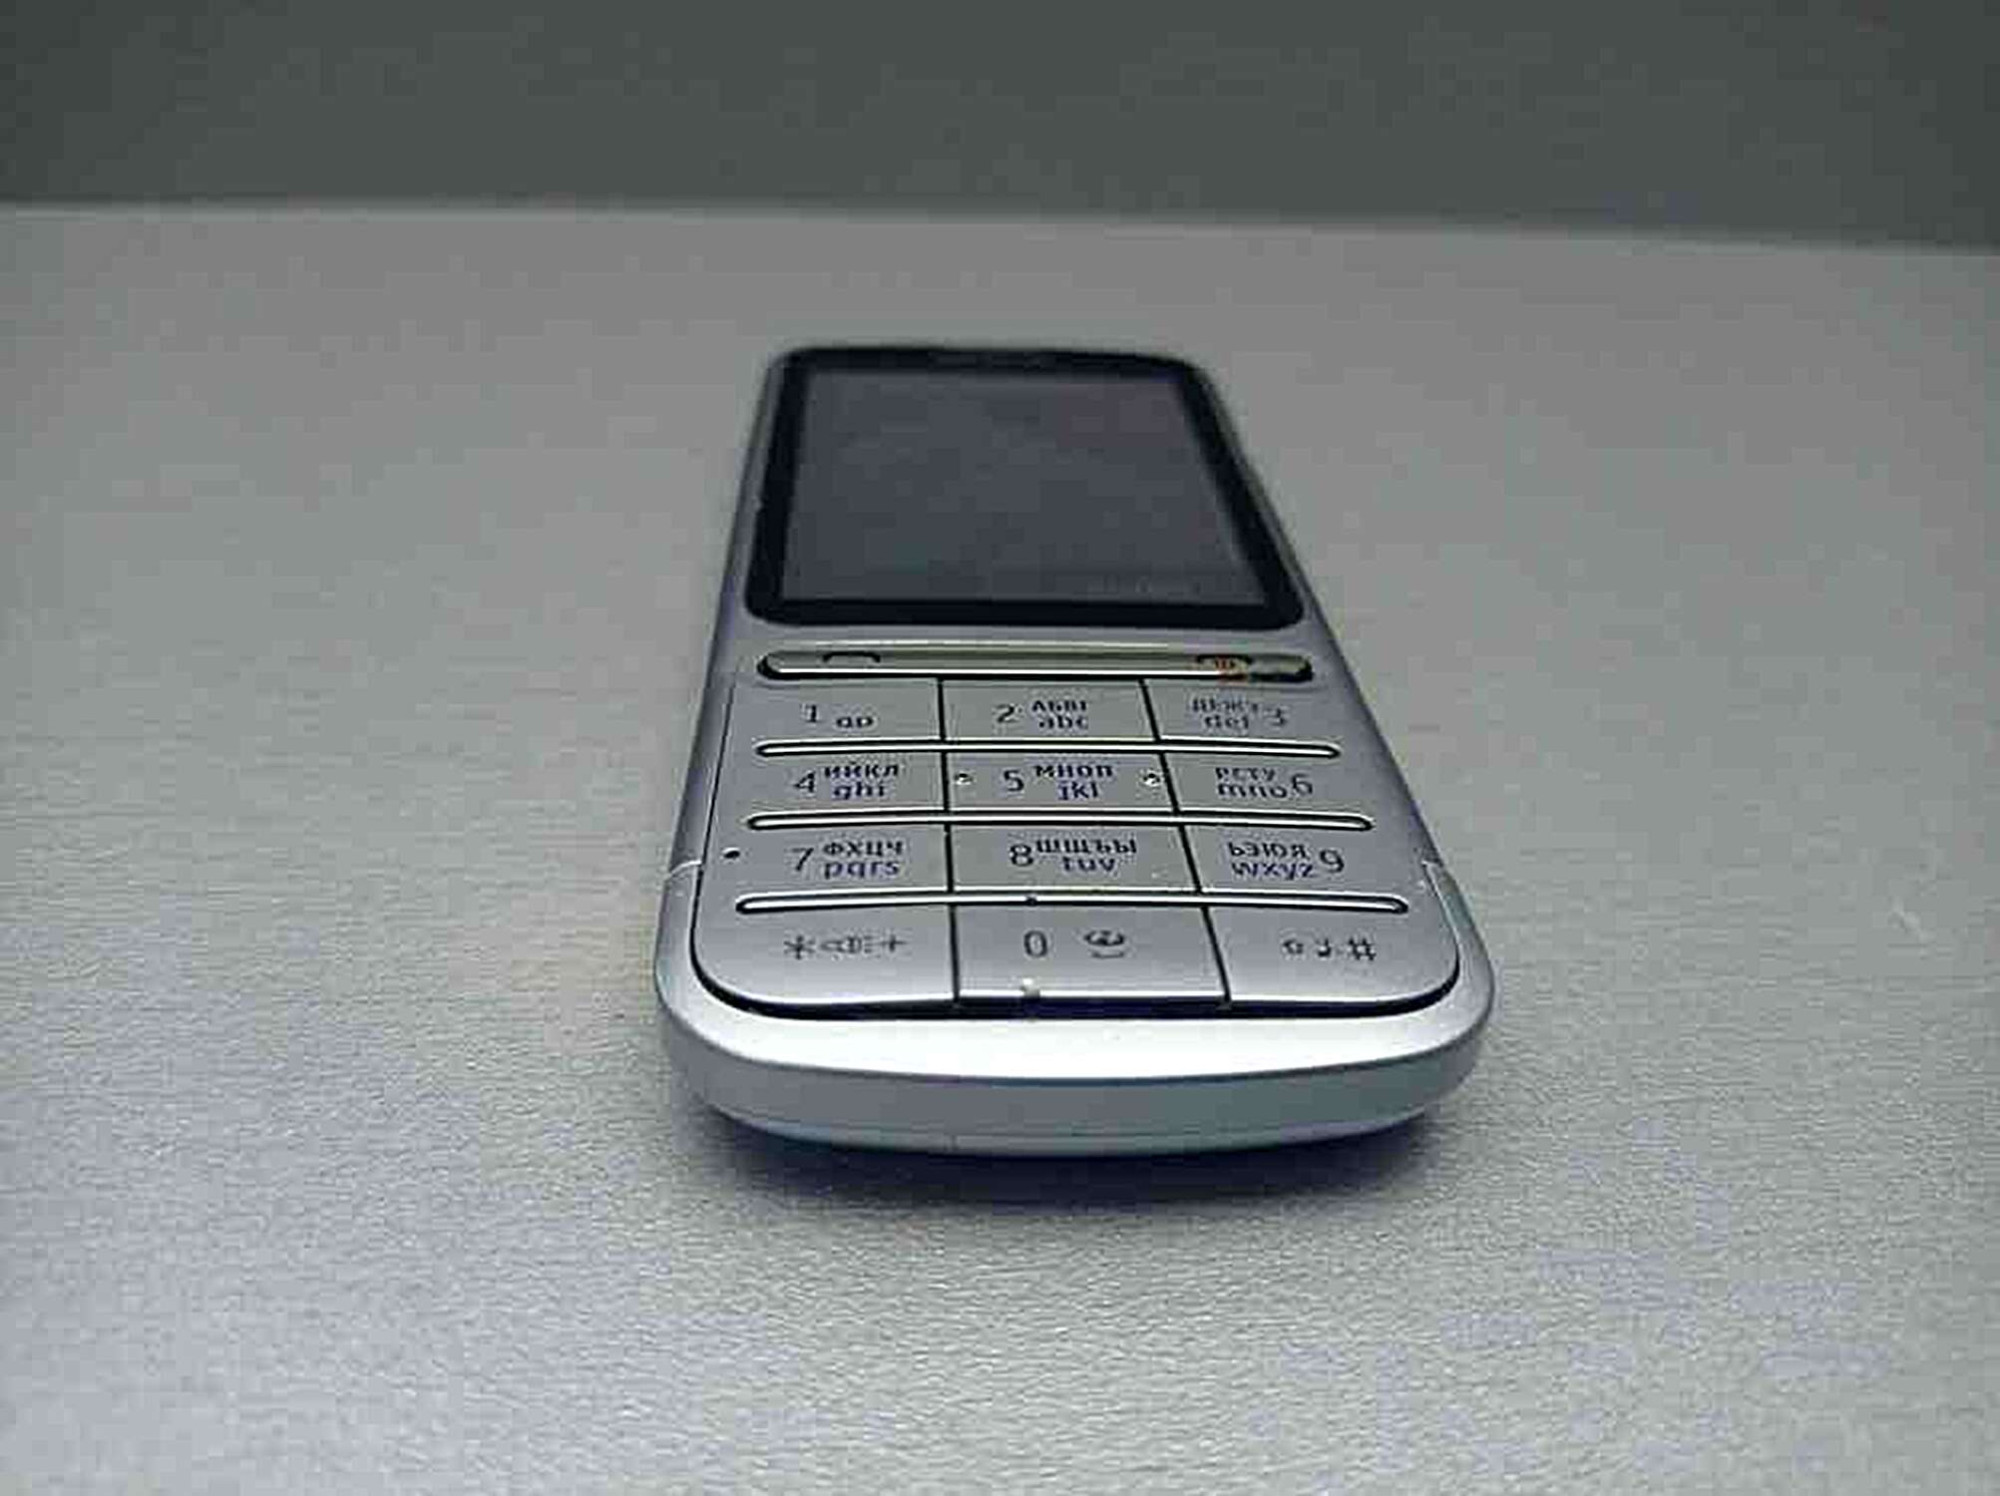 Nokia C3-01 2